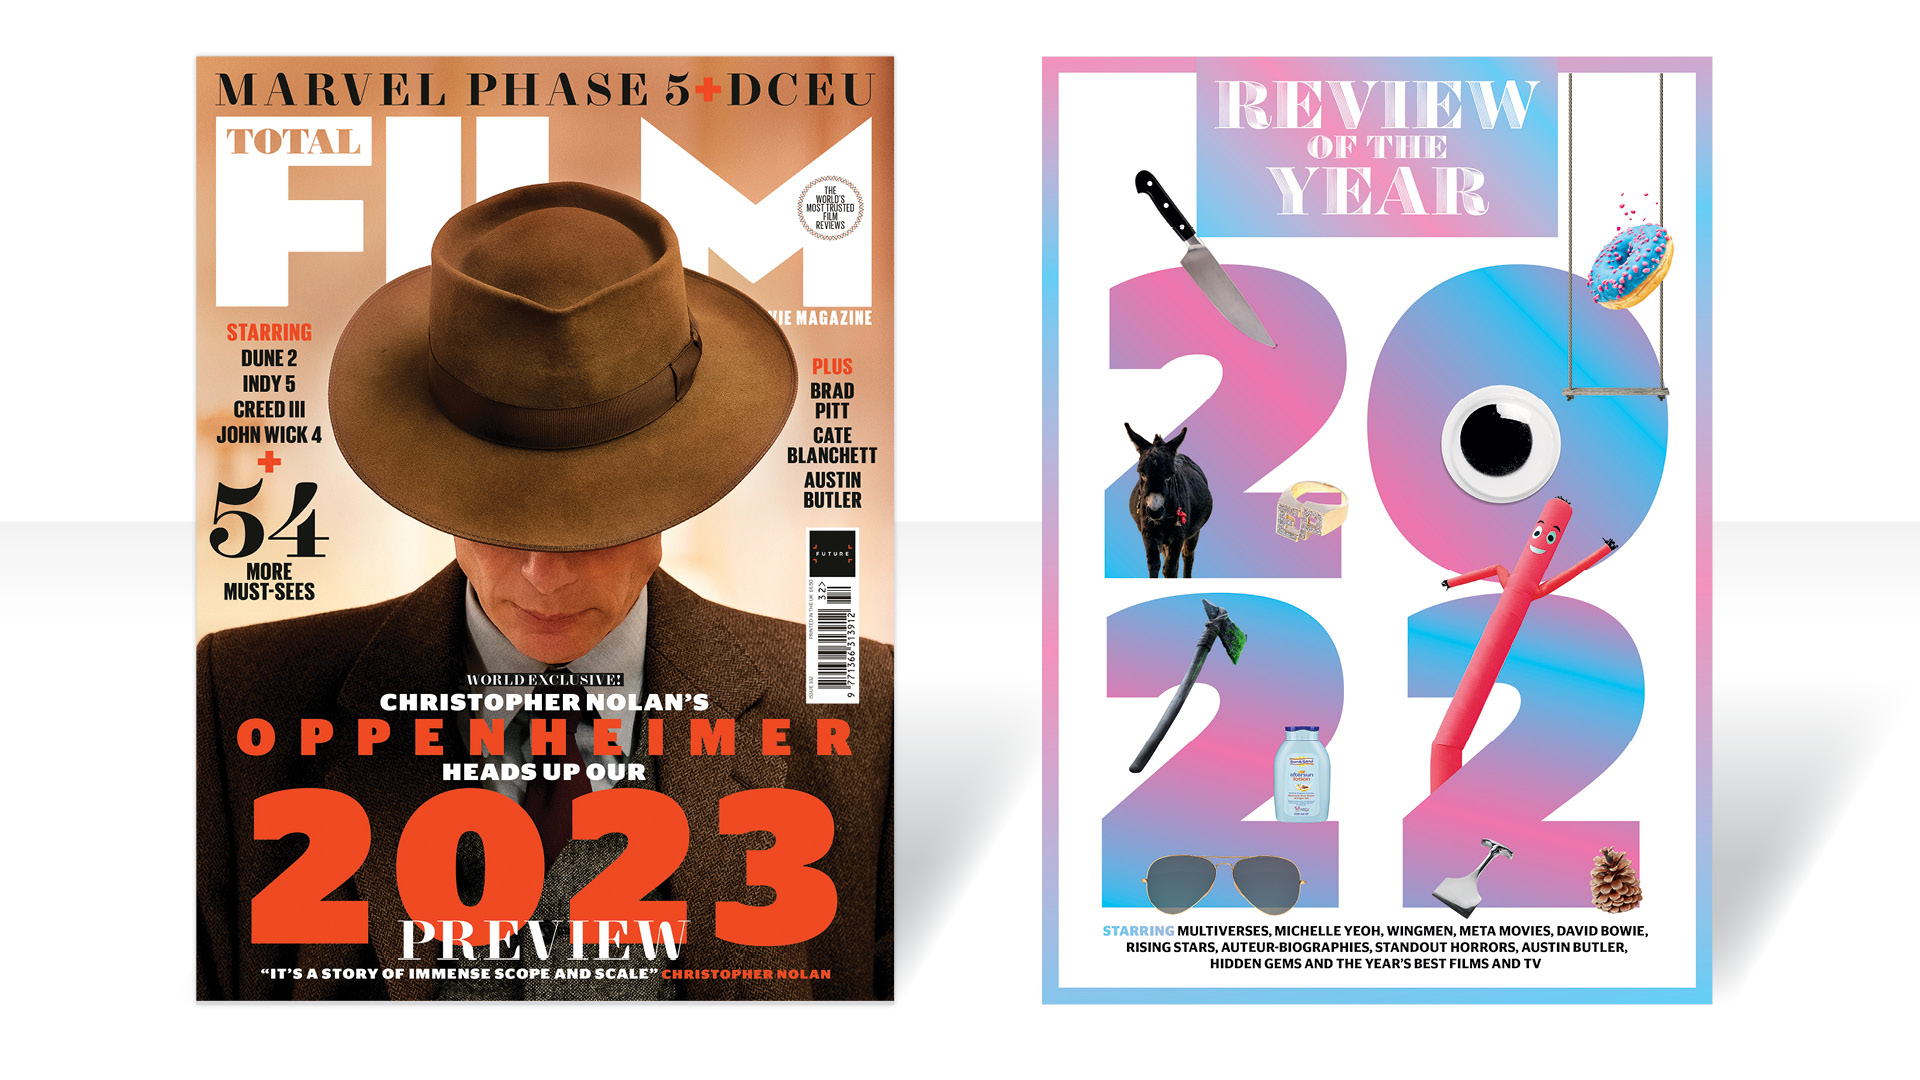 Vista previa y revisión del año 2022 de Total Film 2023